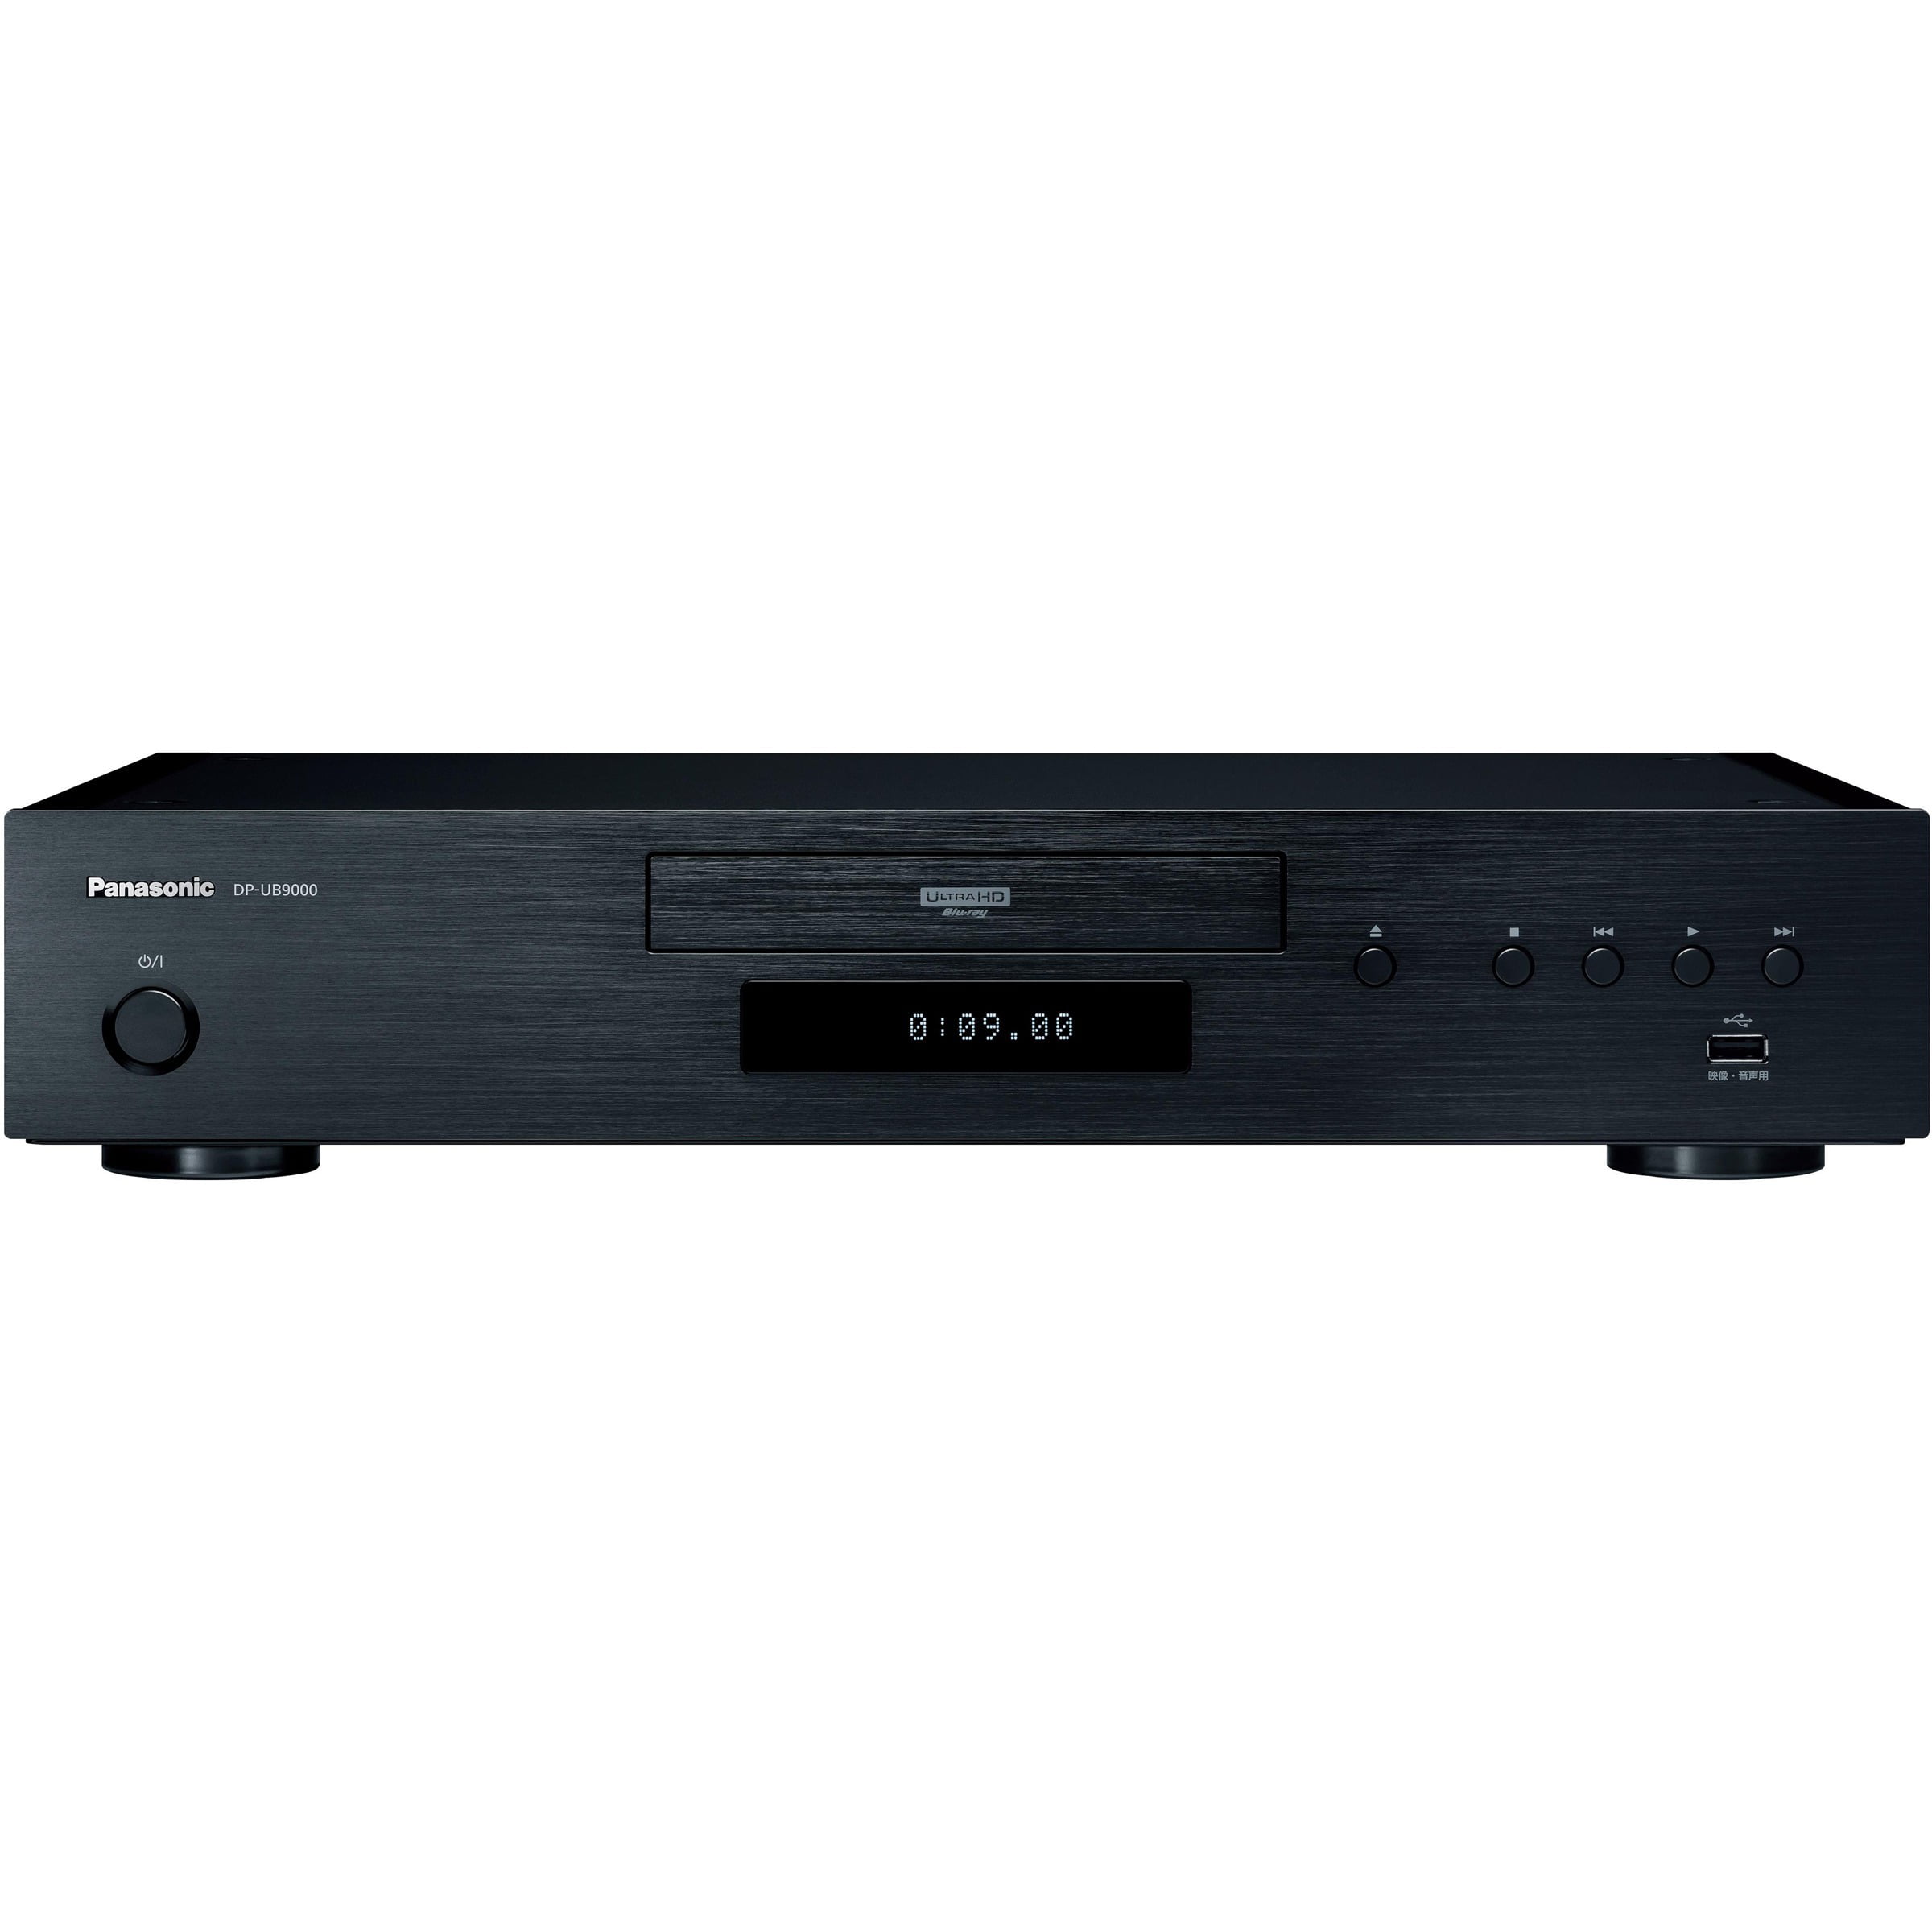 Blu-ray Disc Player DP-UB9000